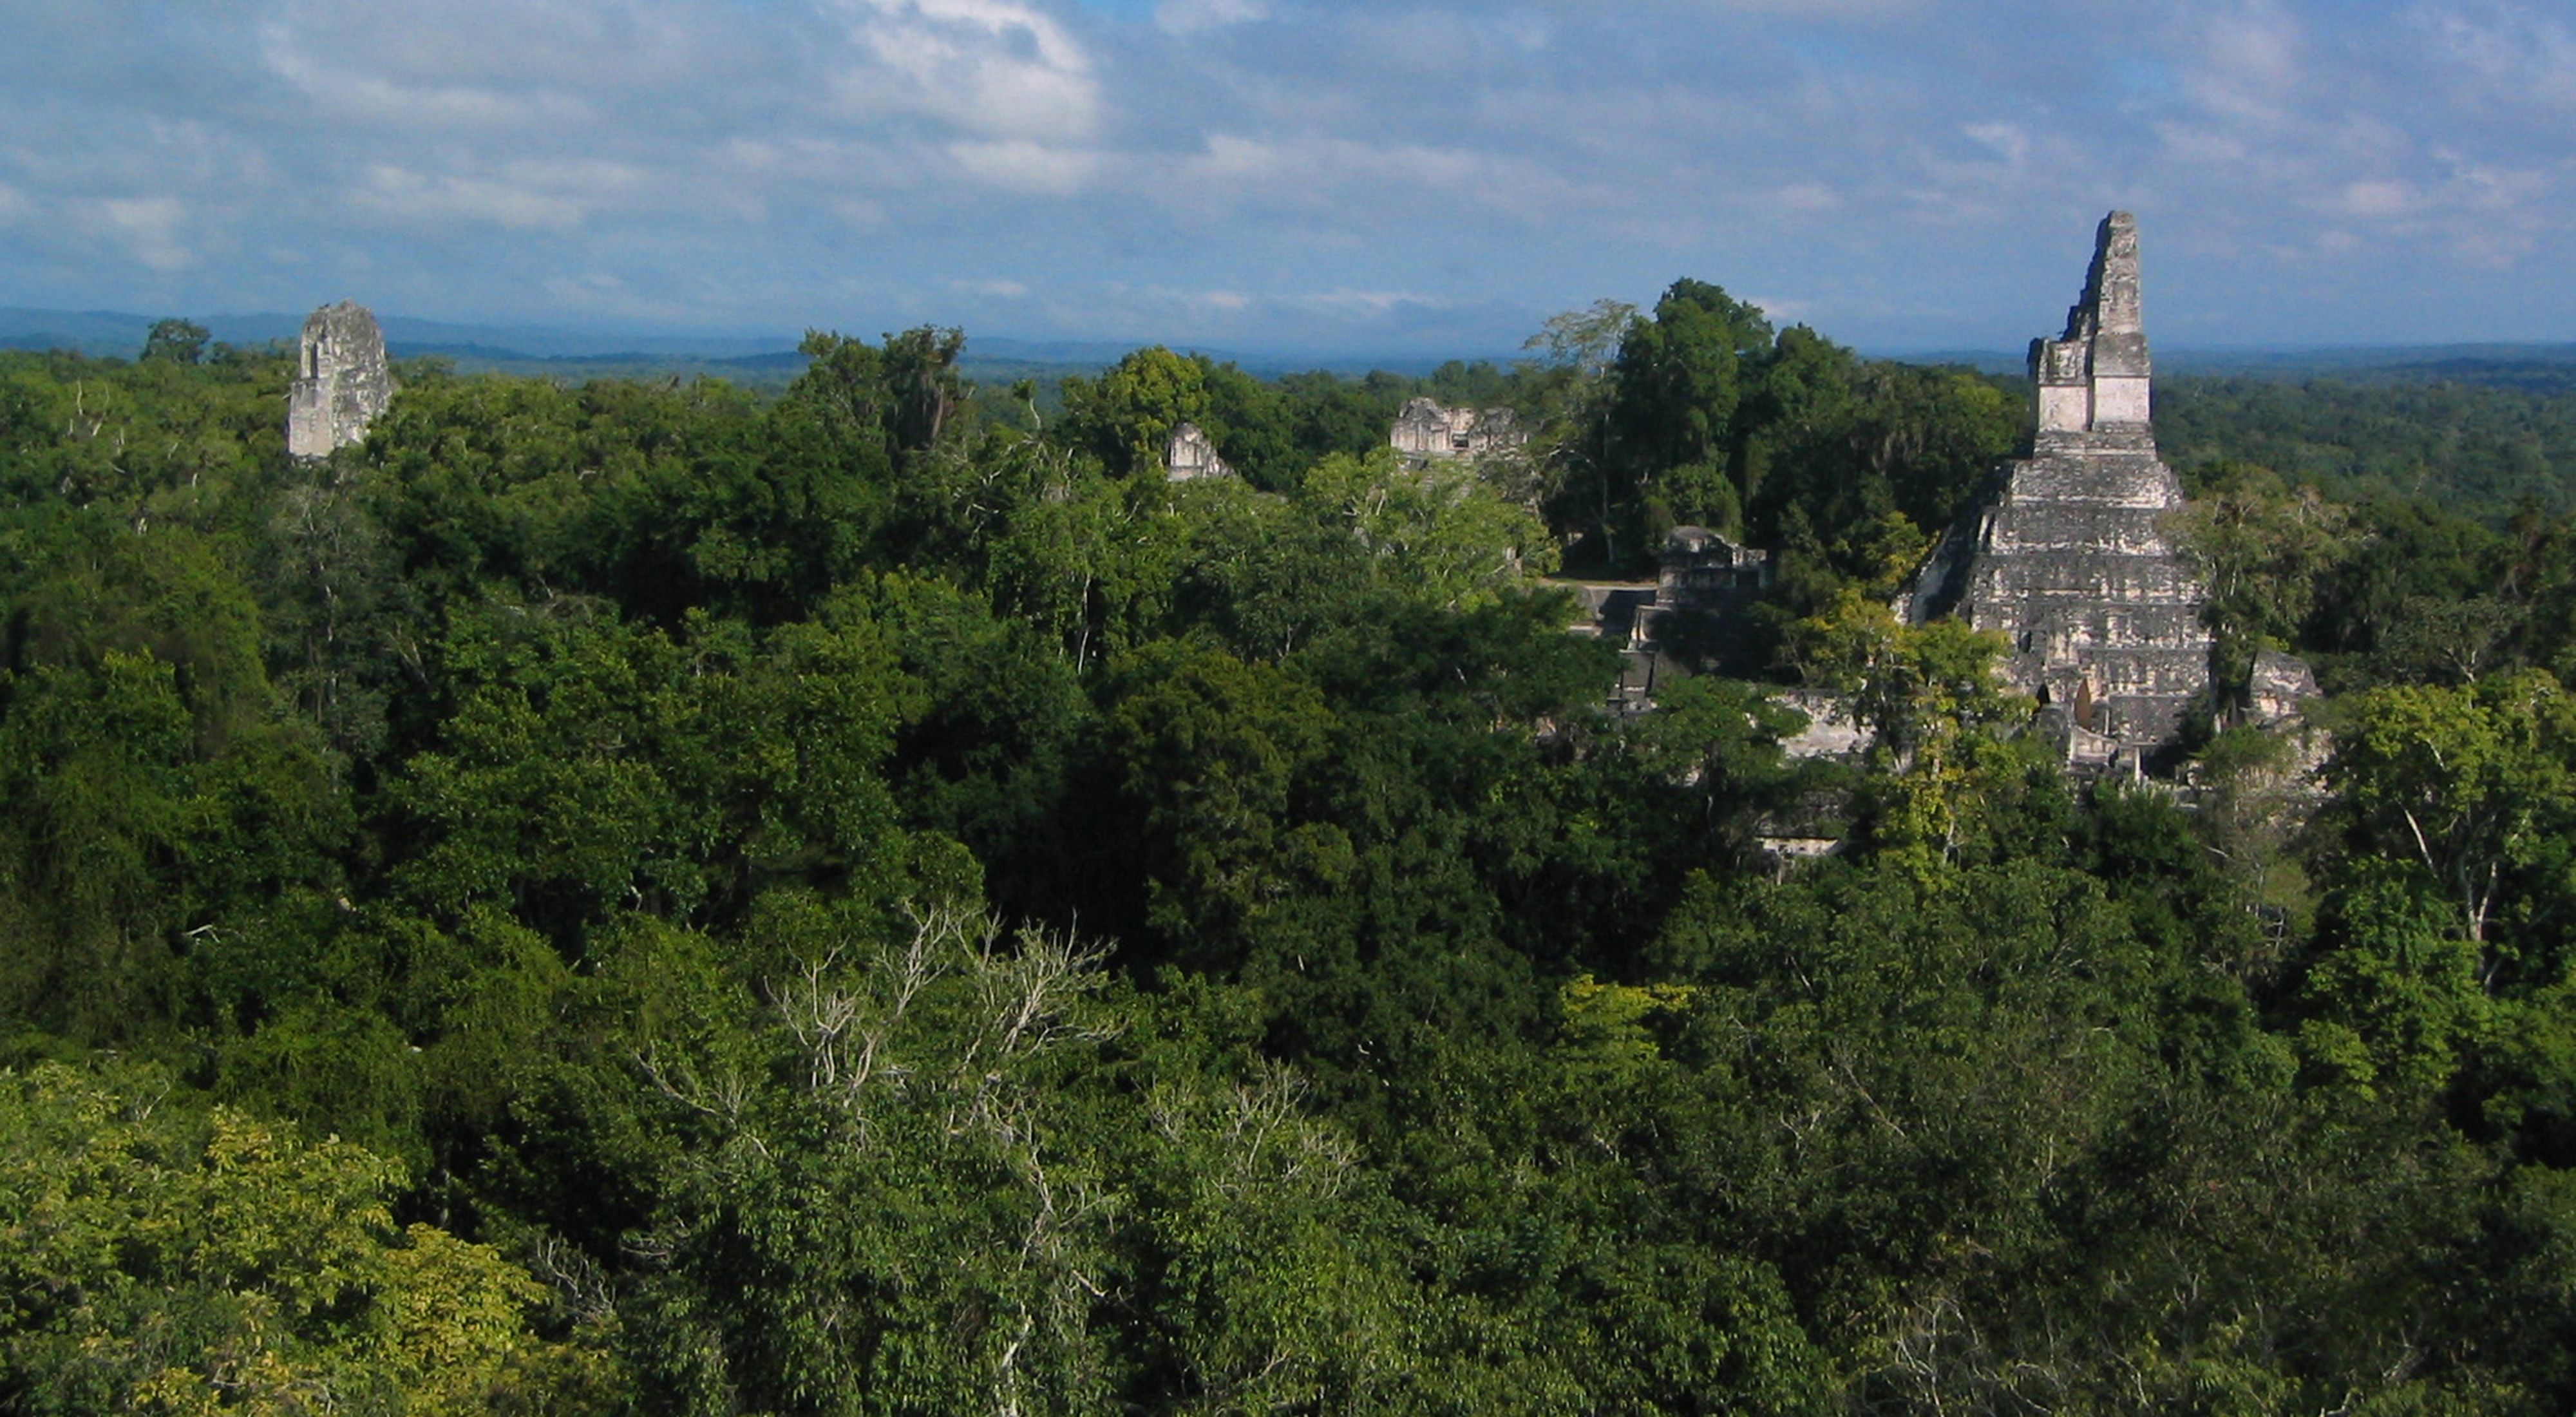 Canopy view of ancient Mayan civilization ruins at Tika